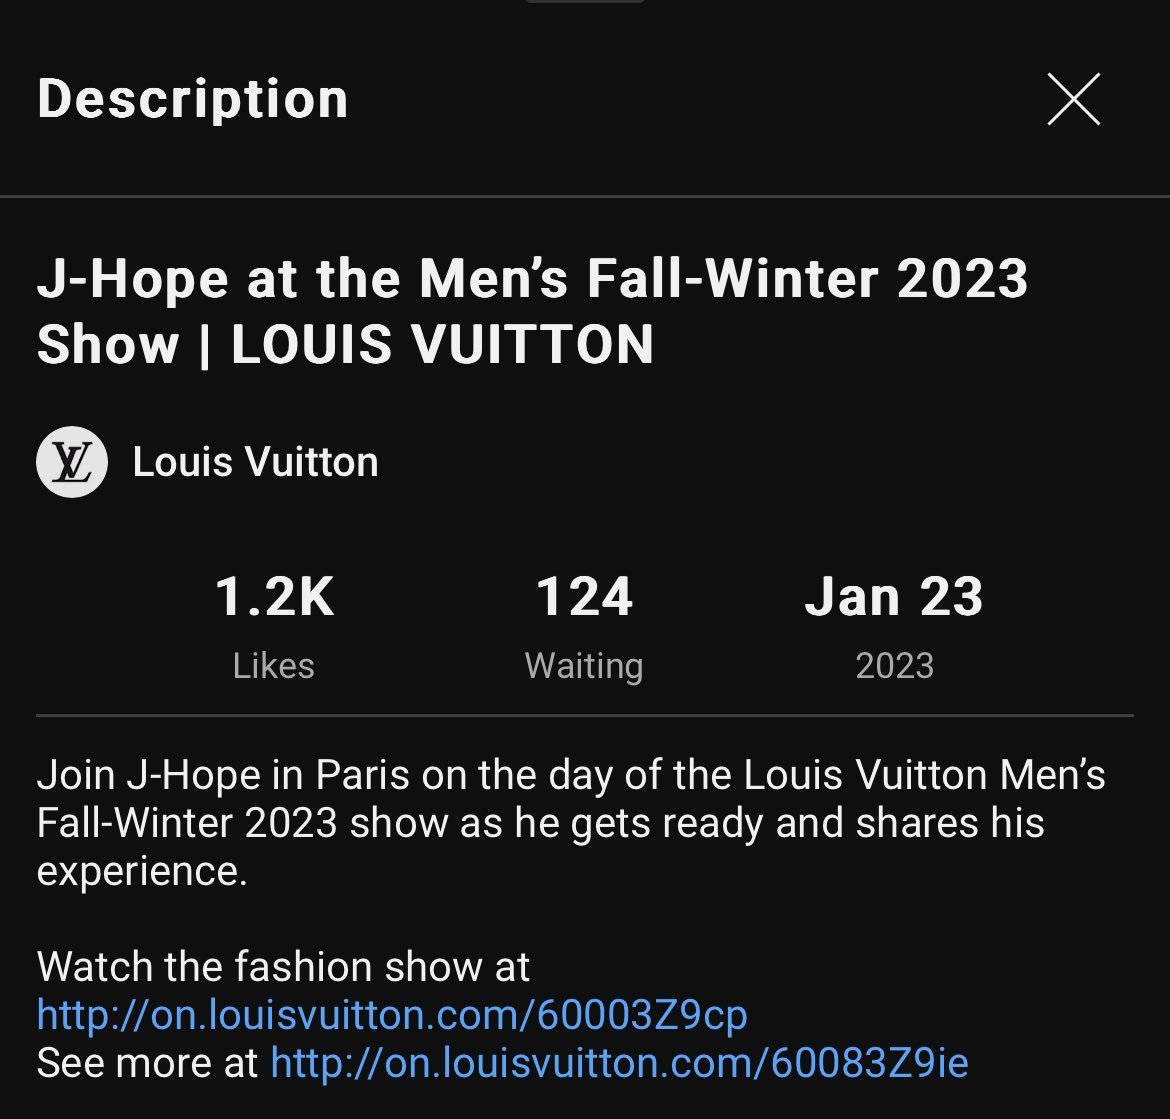 j-hope for Men's Fall-Winter 2023